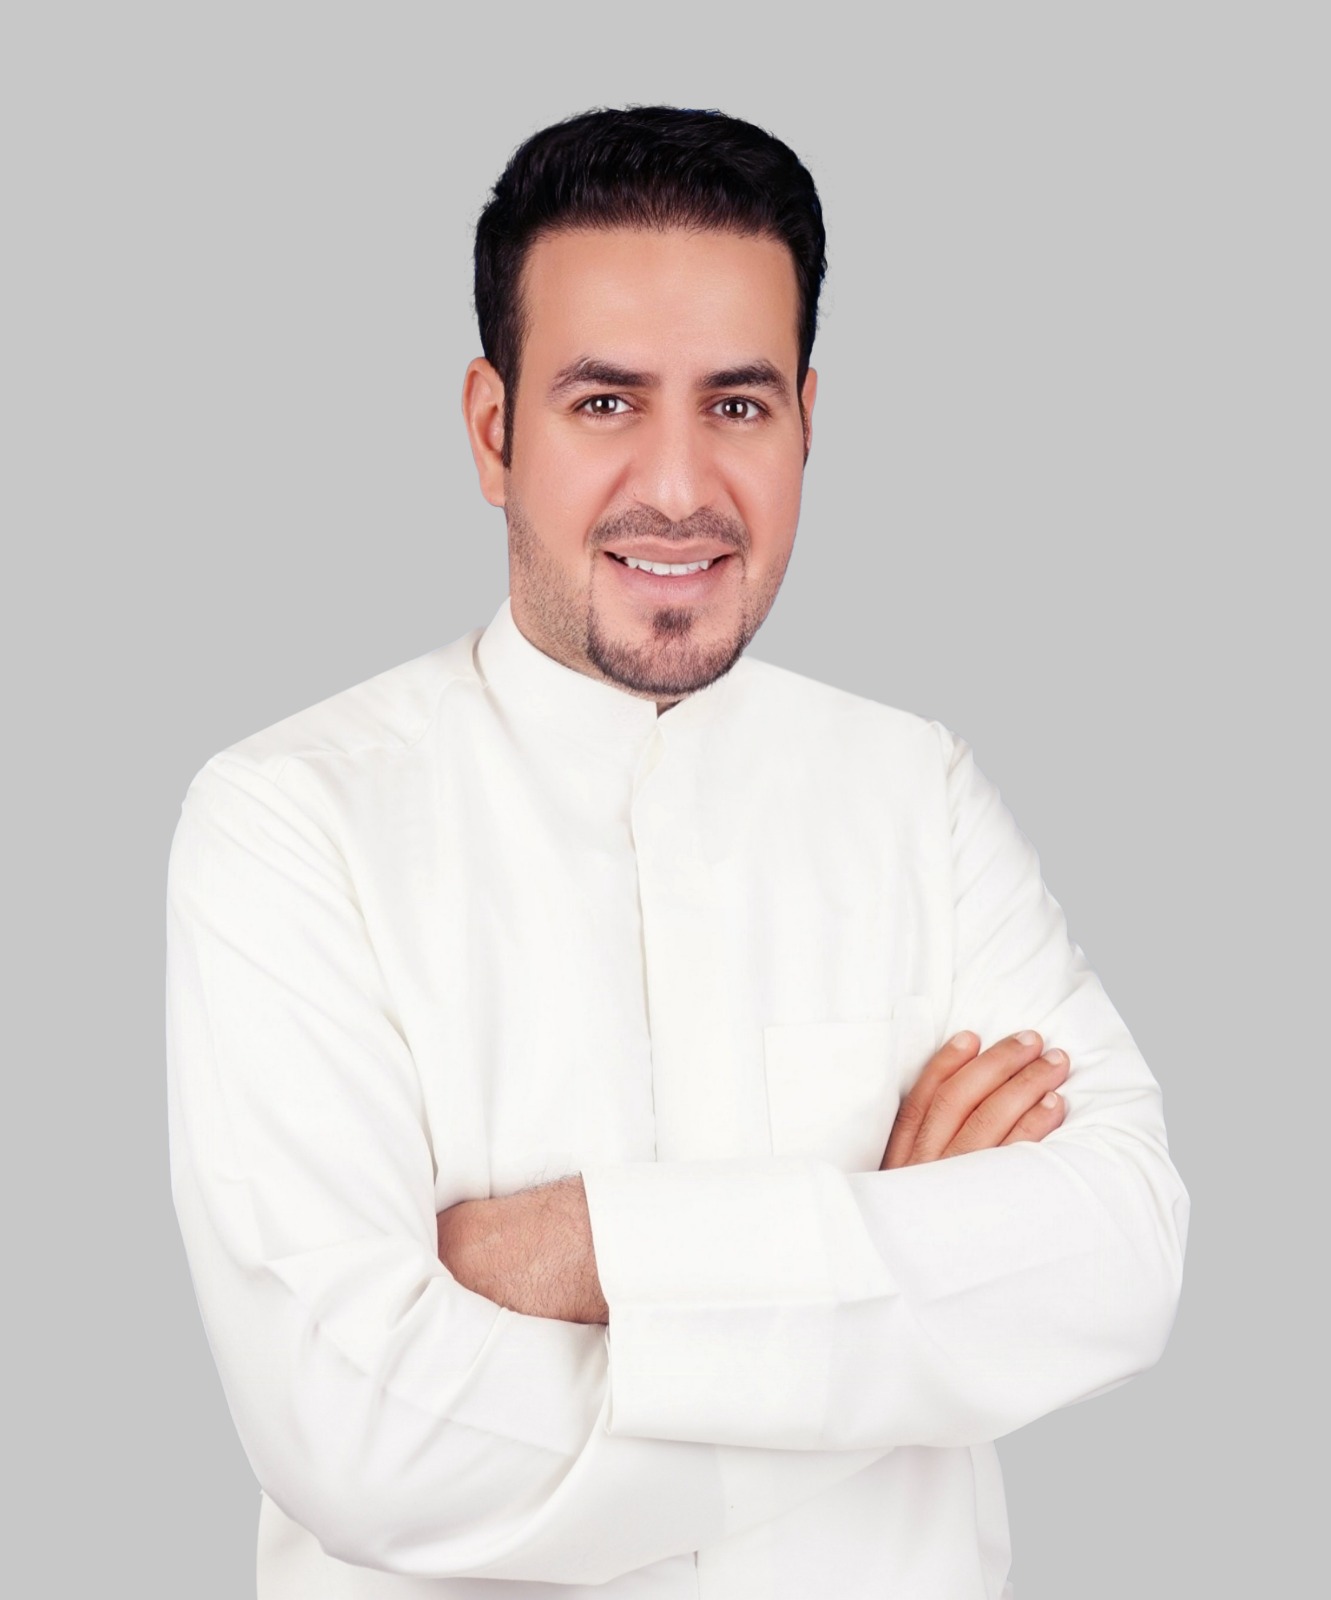 خالد المطيري : هدفي نفع الناس وصناعة المحتوى الجيد